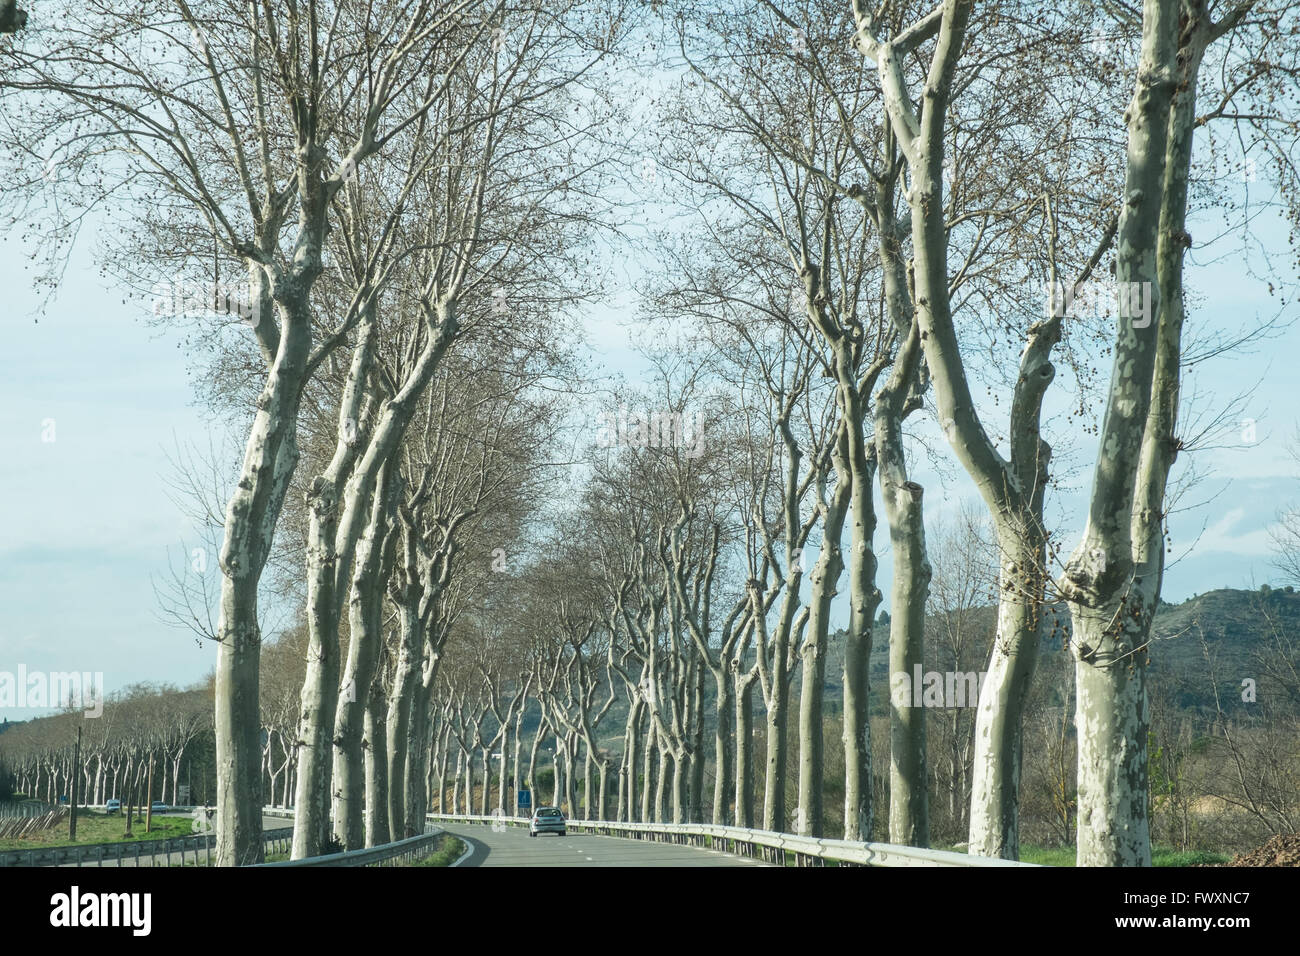 Platanen säumen die Straße, die D118 zwischen Limoux und Couiza in Aude, Südfrankreich, Frankreich, Europa. Stockfoto